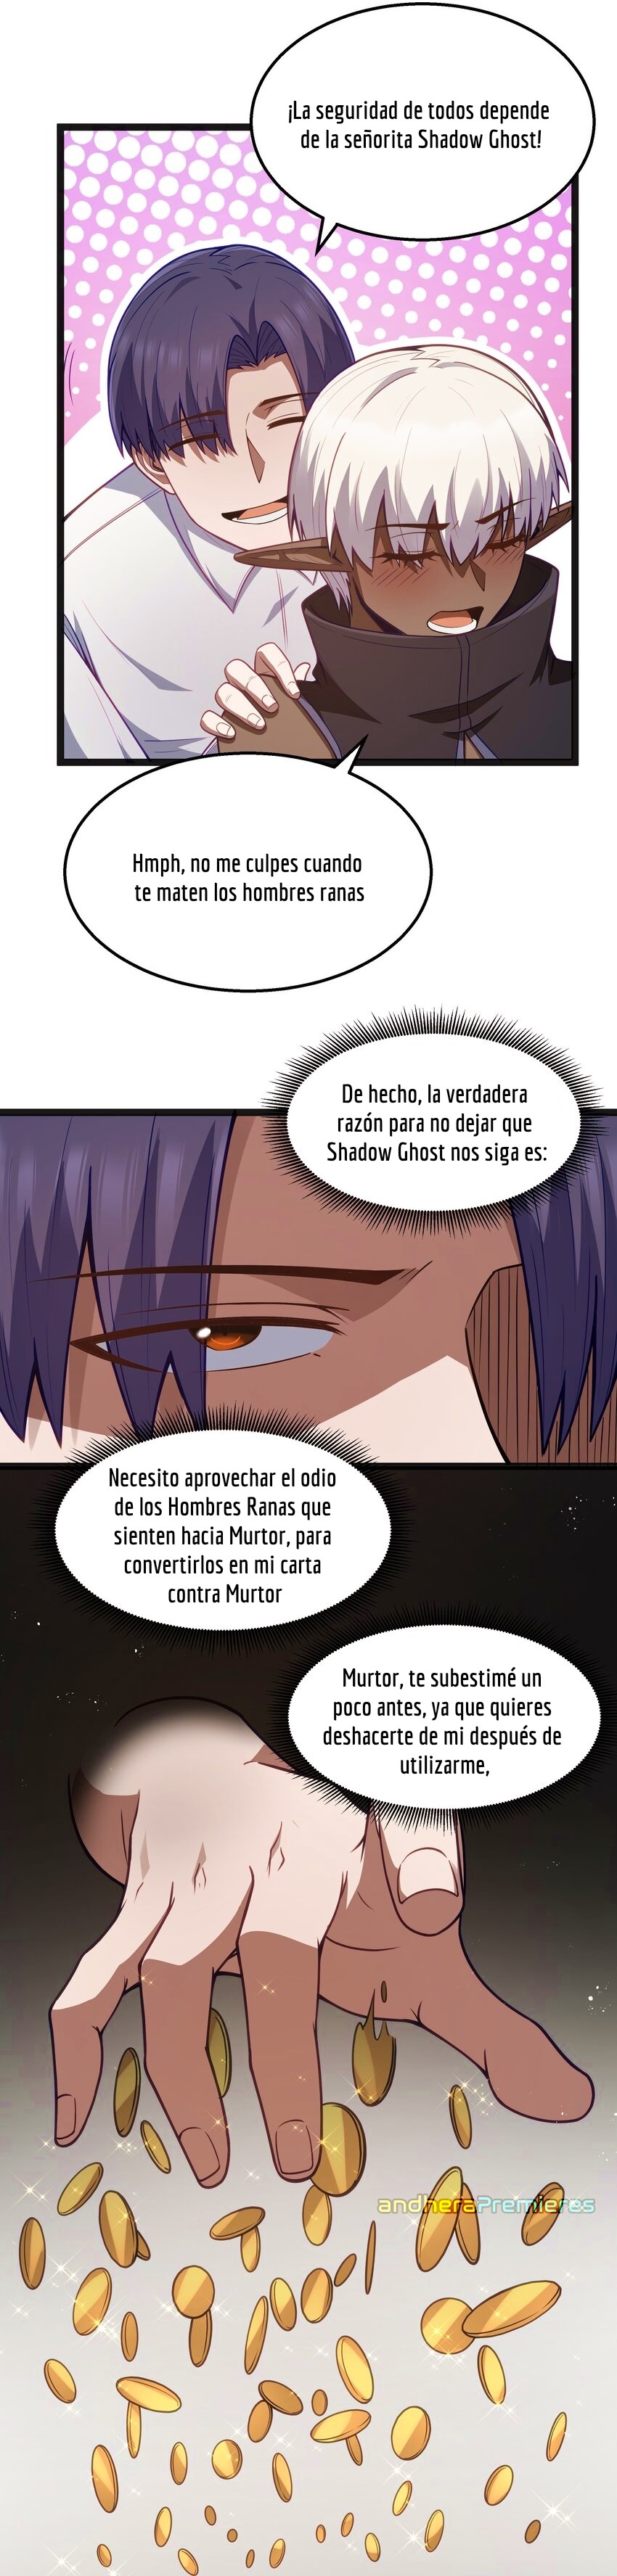 Manga El Héroe de la Avaricia Chapter 23 image number 27